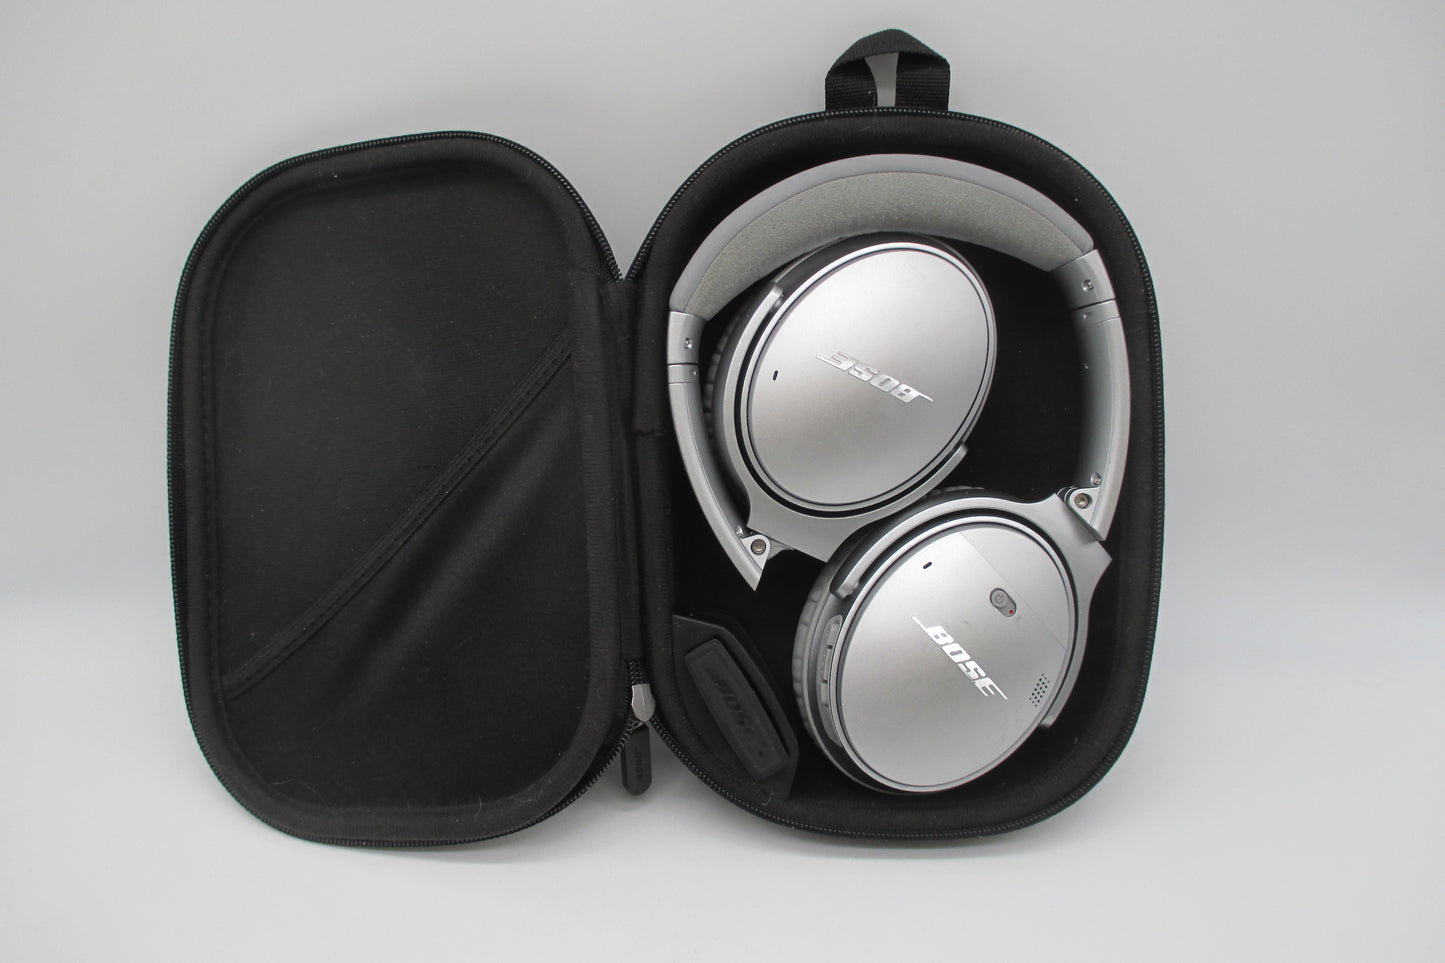 Bose Quiet Comfort 35 Headphones